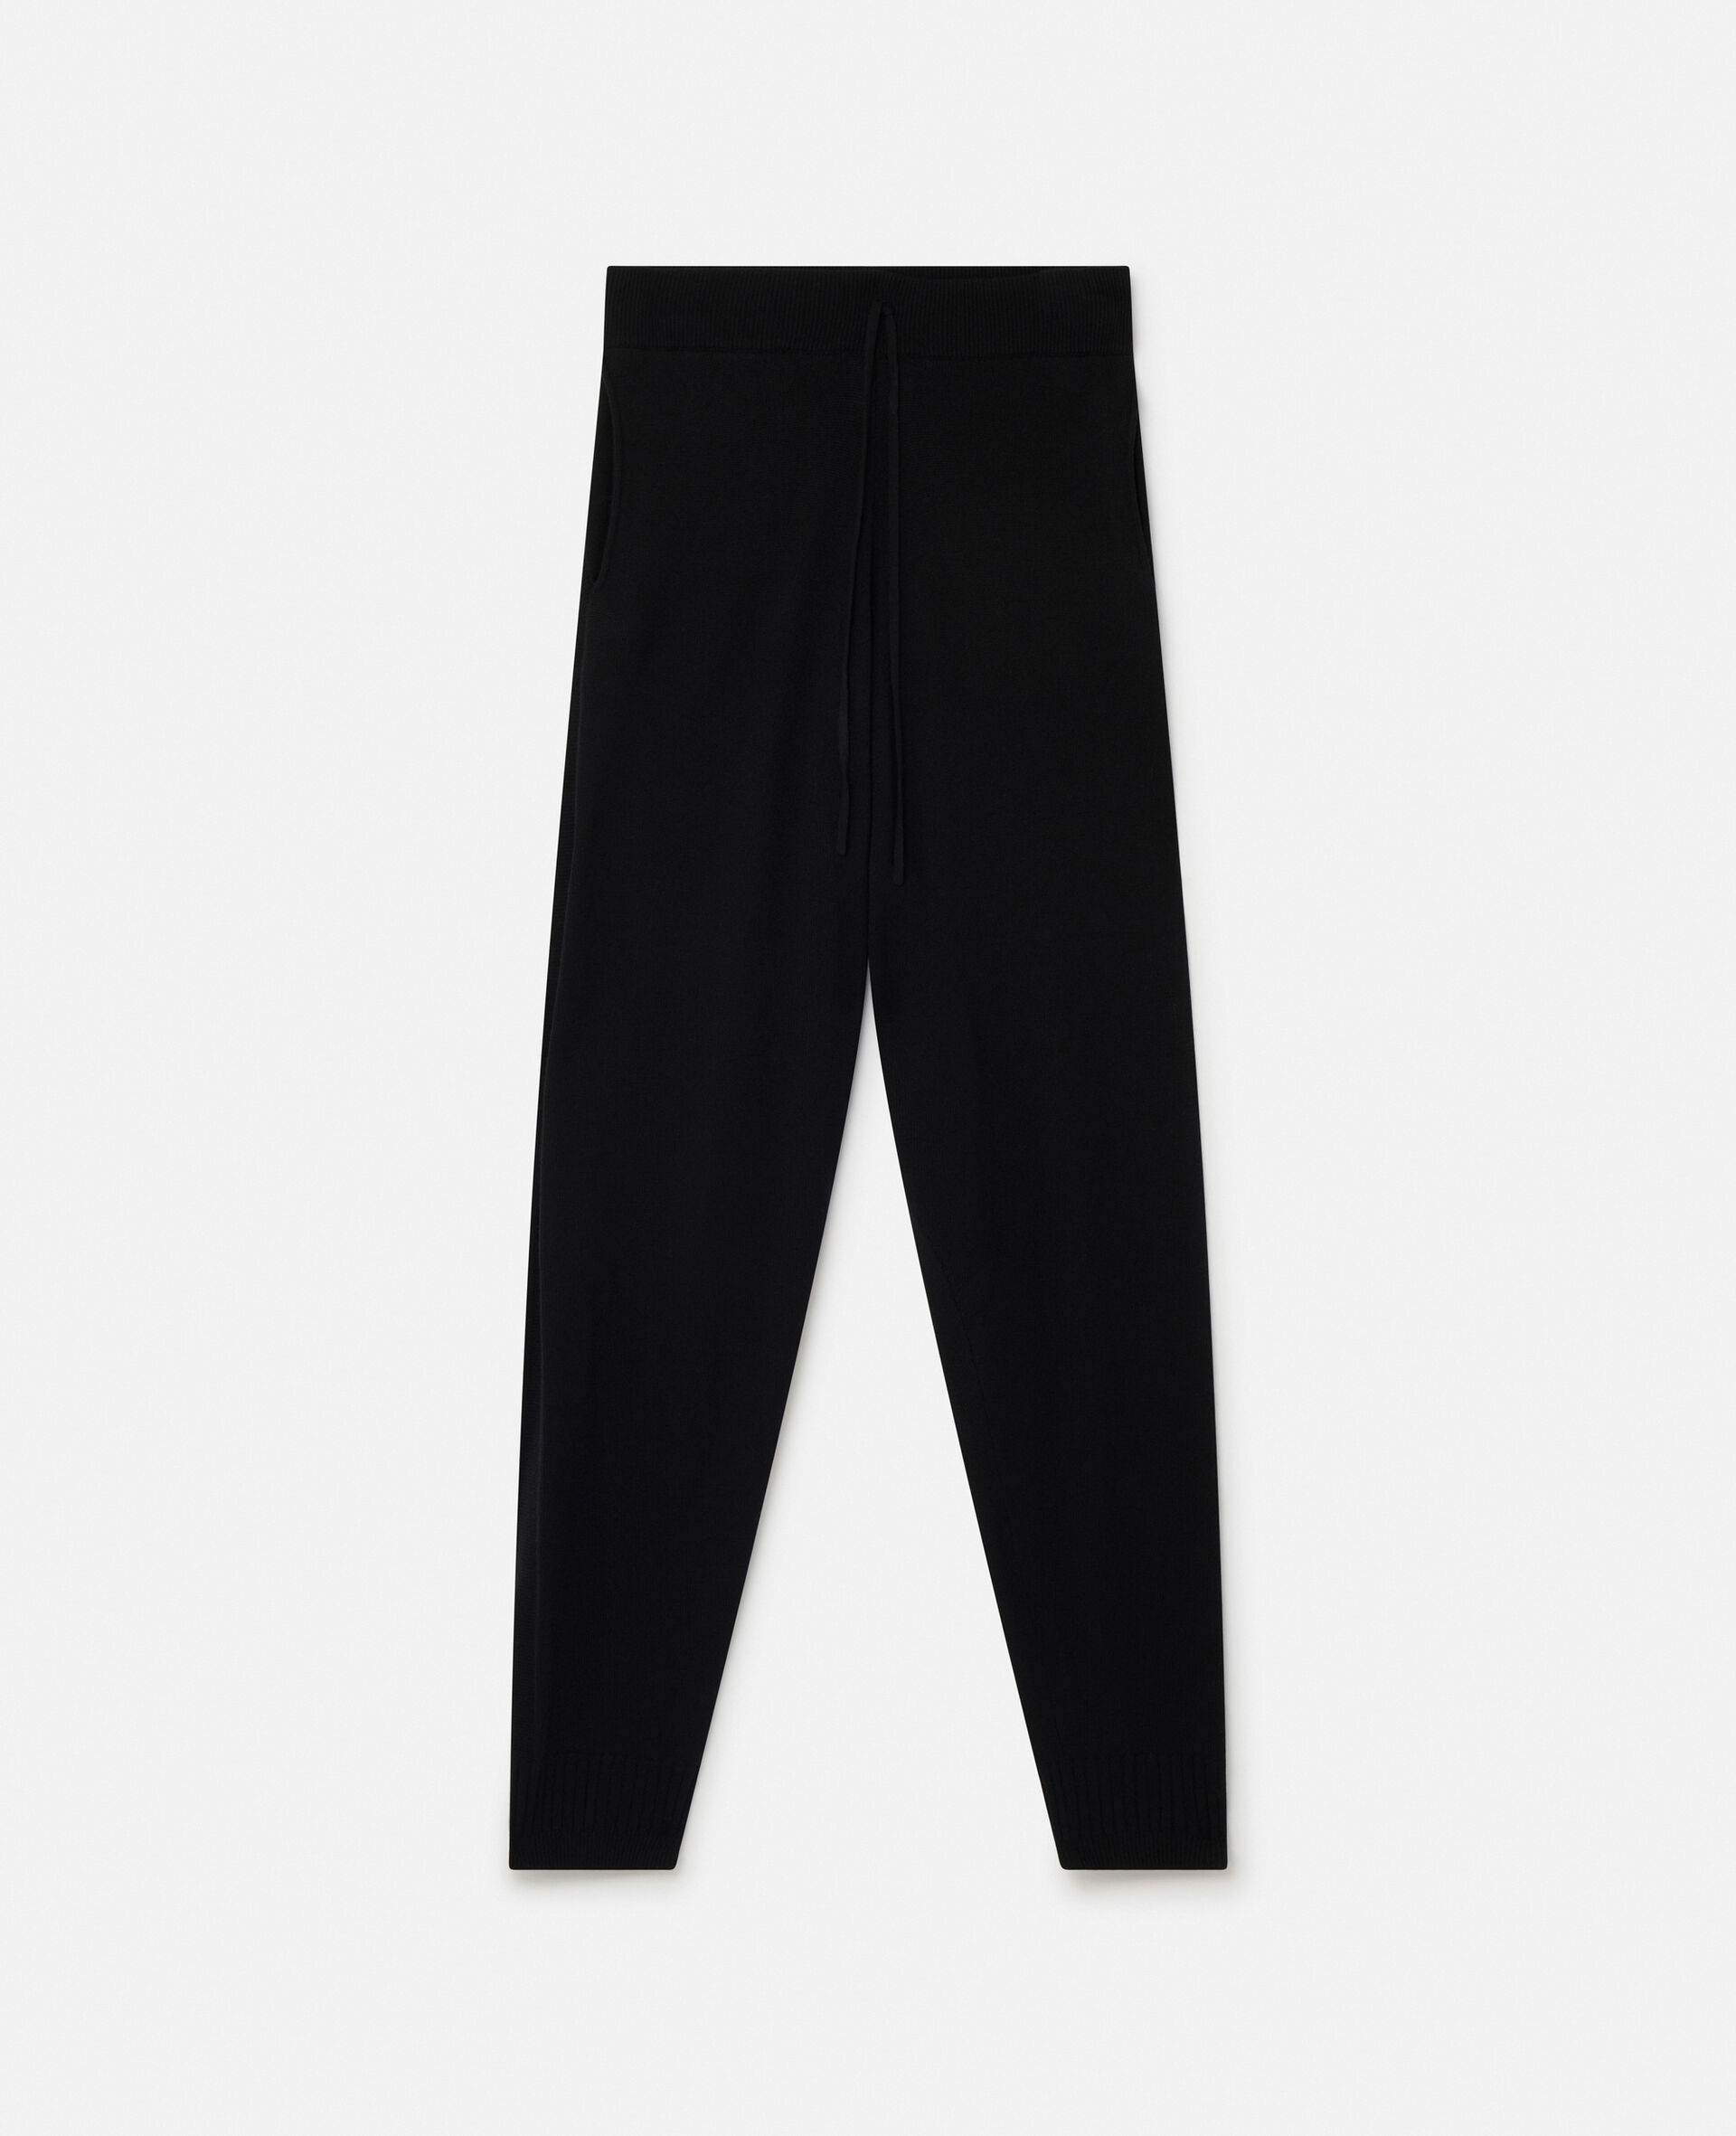 Pantalon Stella Iconics en maille fine resserré aux chevilles-Noir-large image number 0